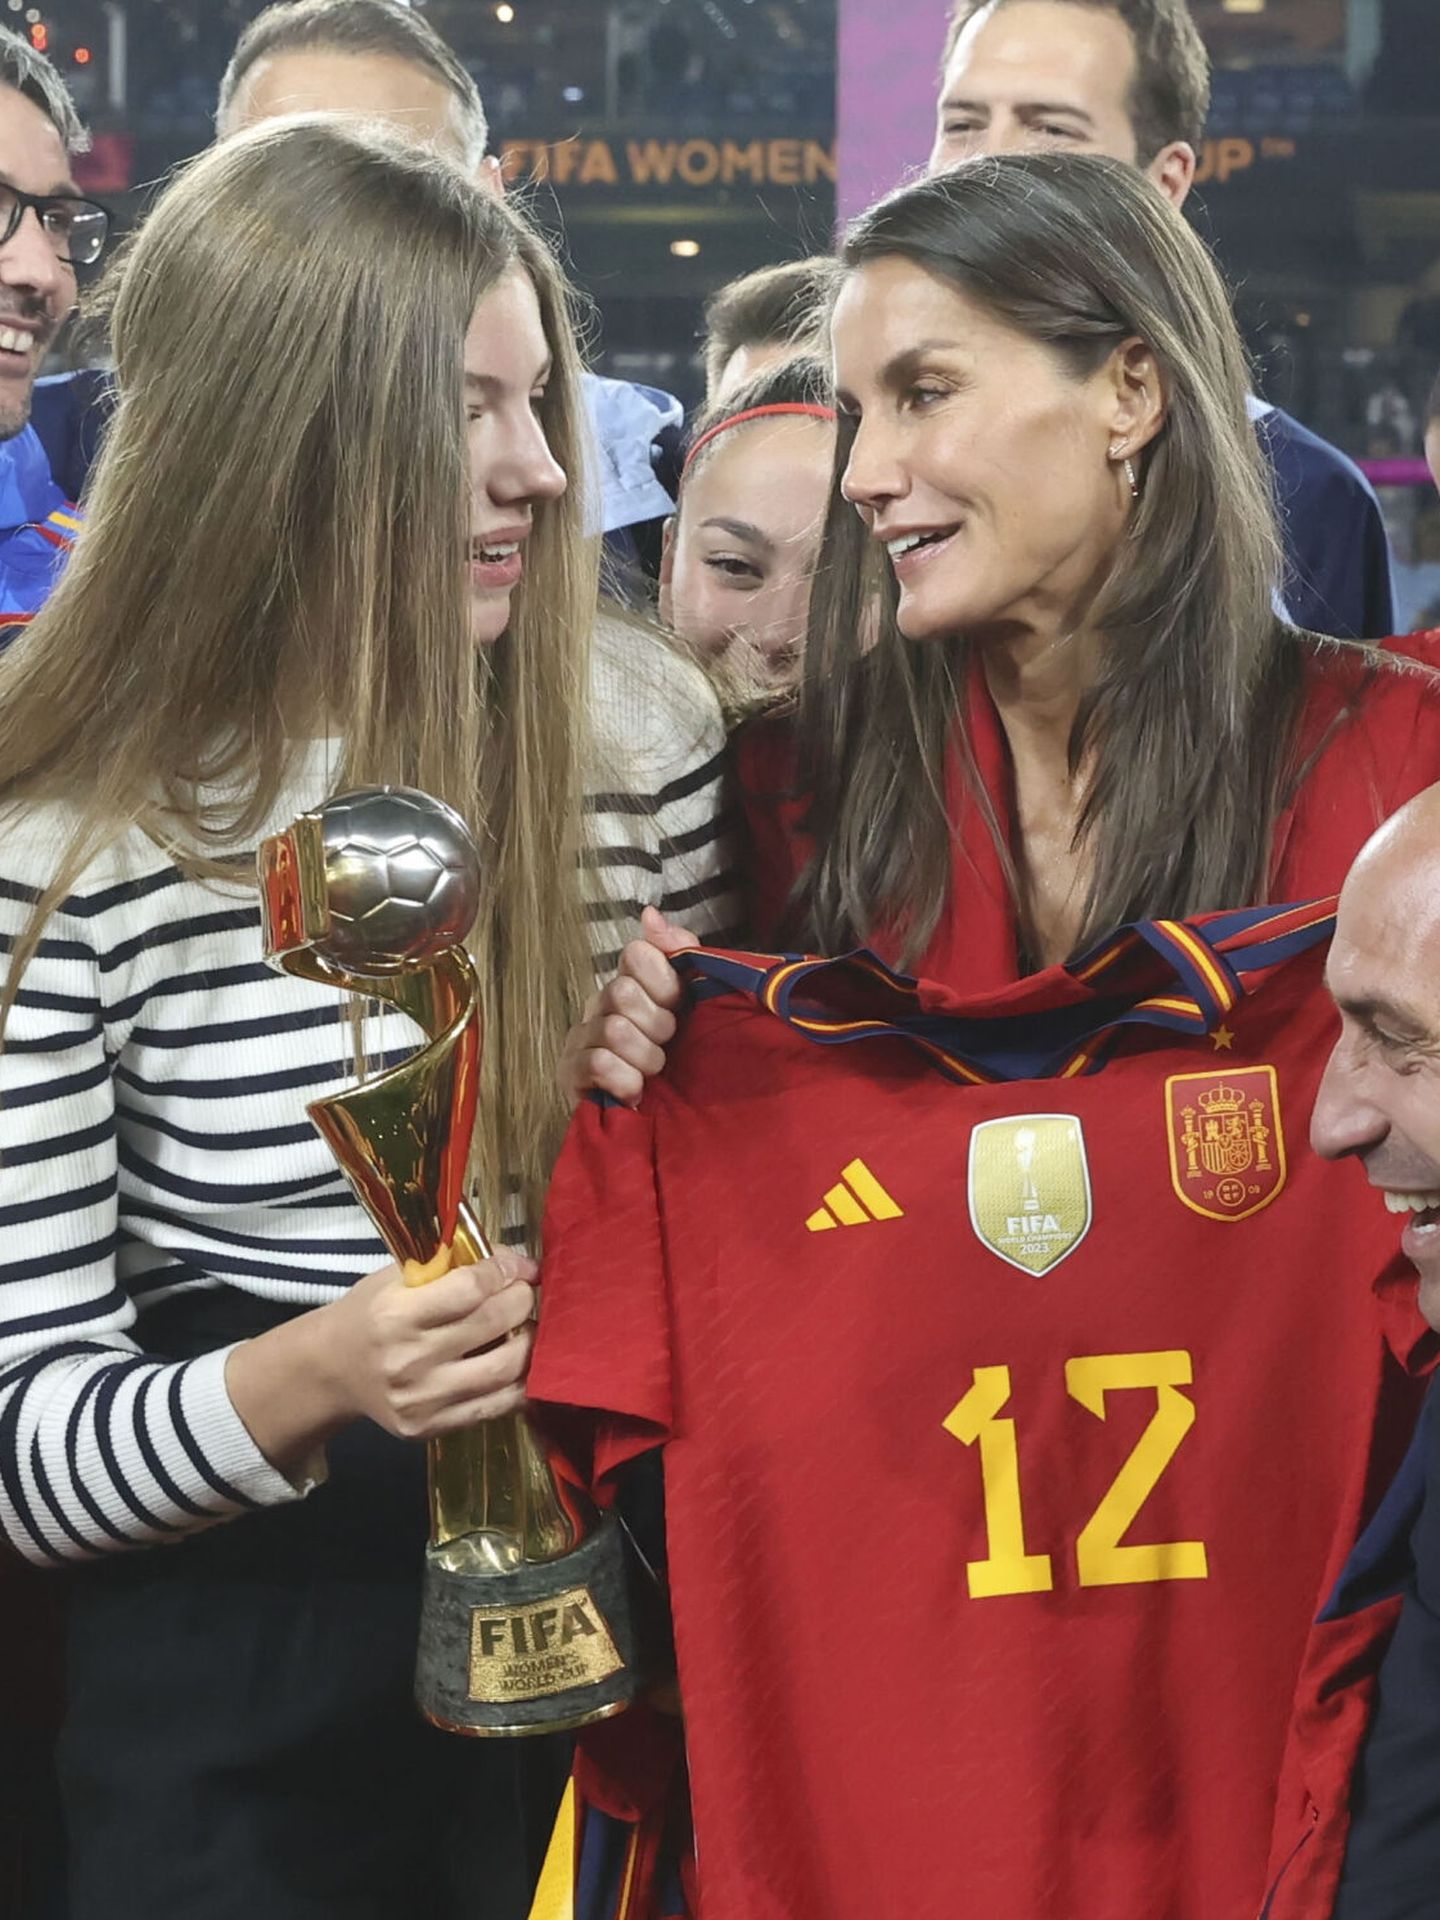 La reina Letizia y la infanta Sofía, durante las celebraciones de la selección española femenina de fútbol en Sídney (EFE/José Jiménez)